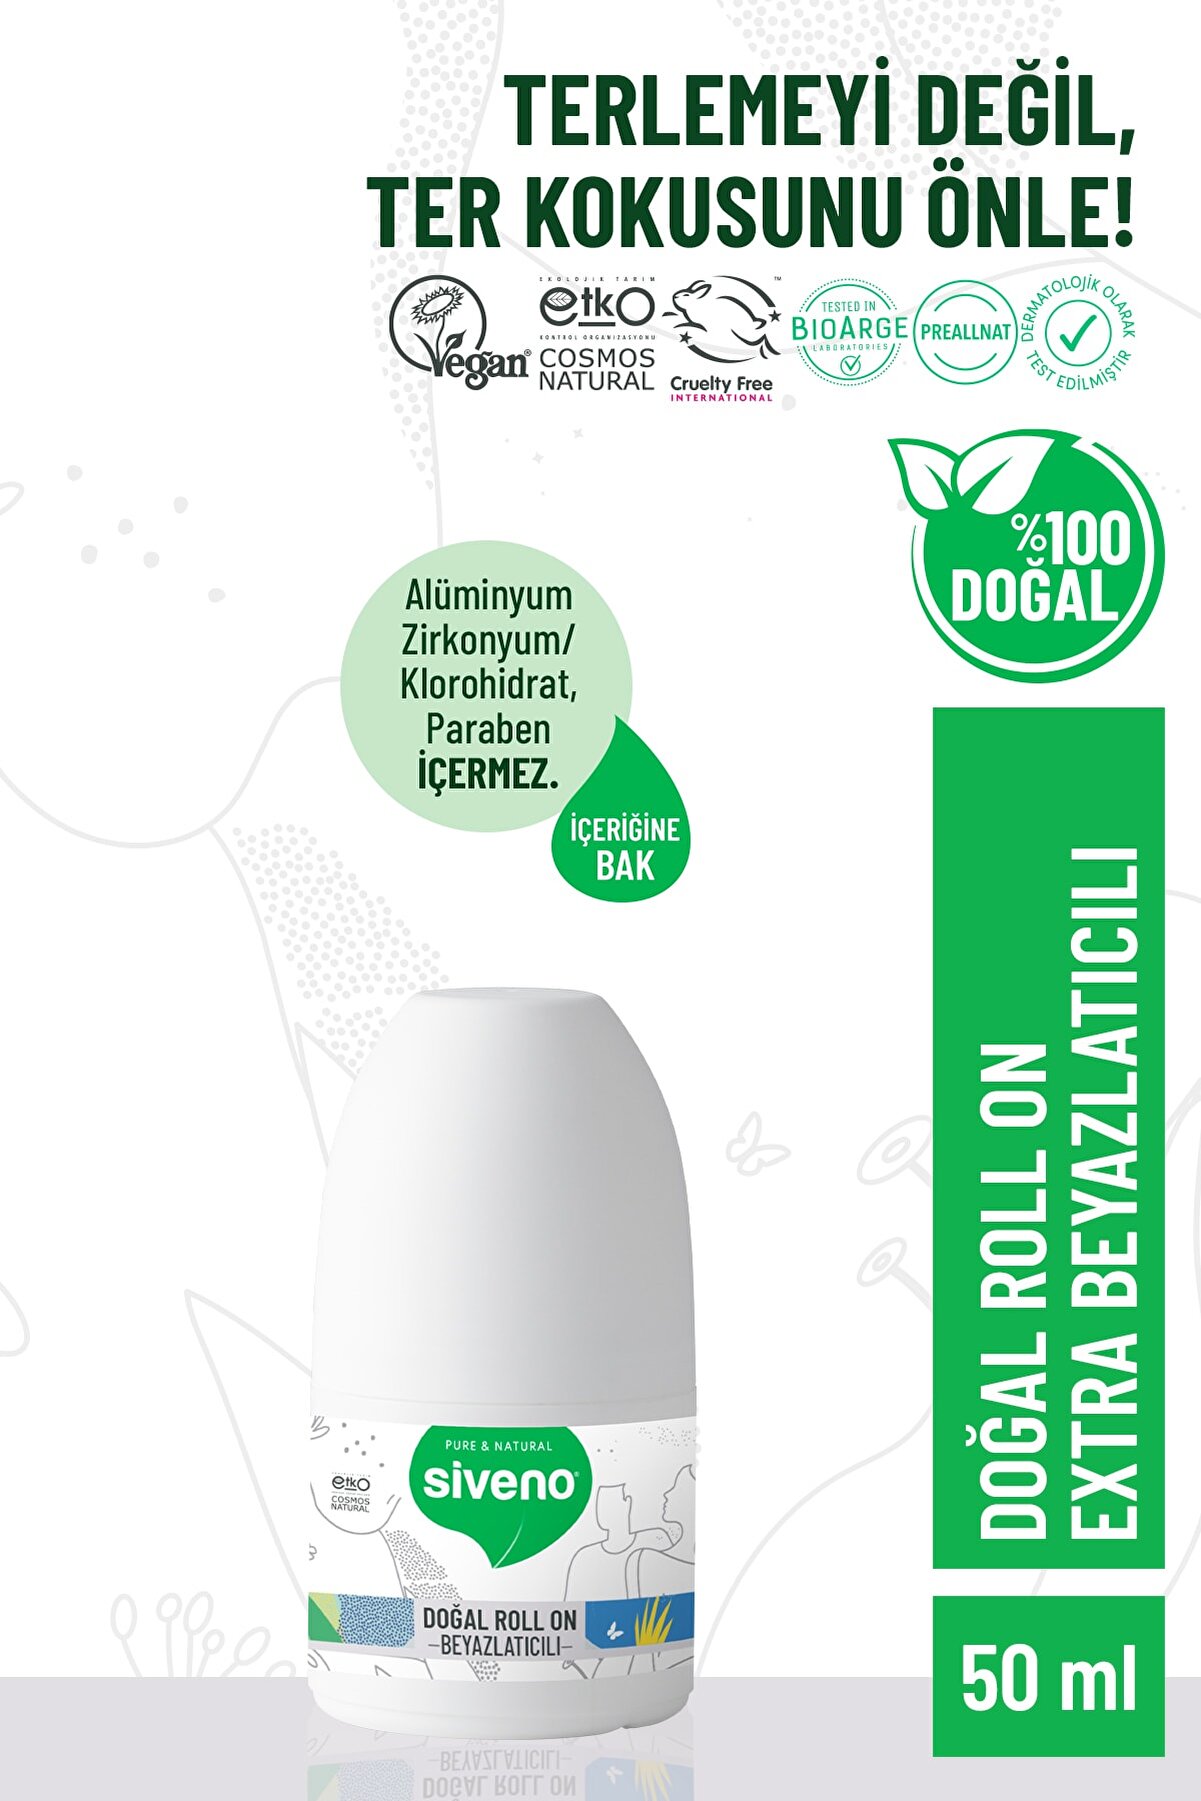 Siveno %100 Doğal Roll-on Beyazlatıcı Etkili Deodorant Ter Kokusu Önleyici Bitkisel Lekesiz Vegan 50 ml